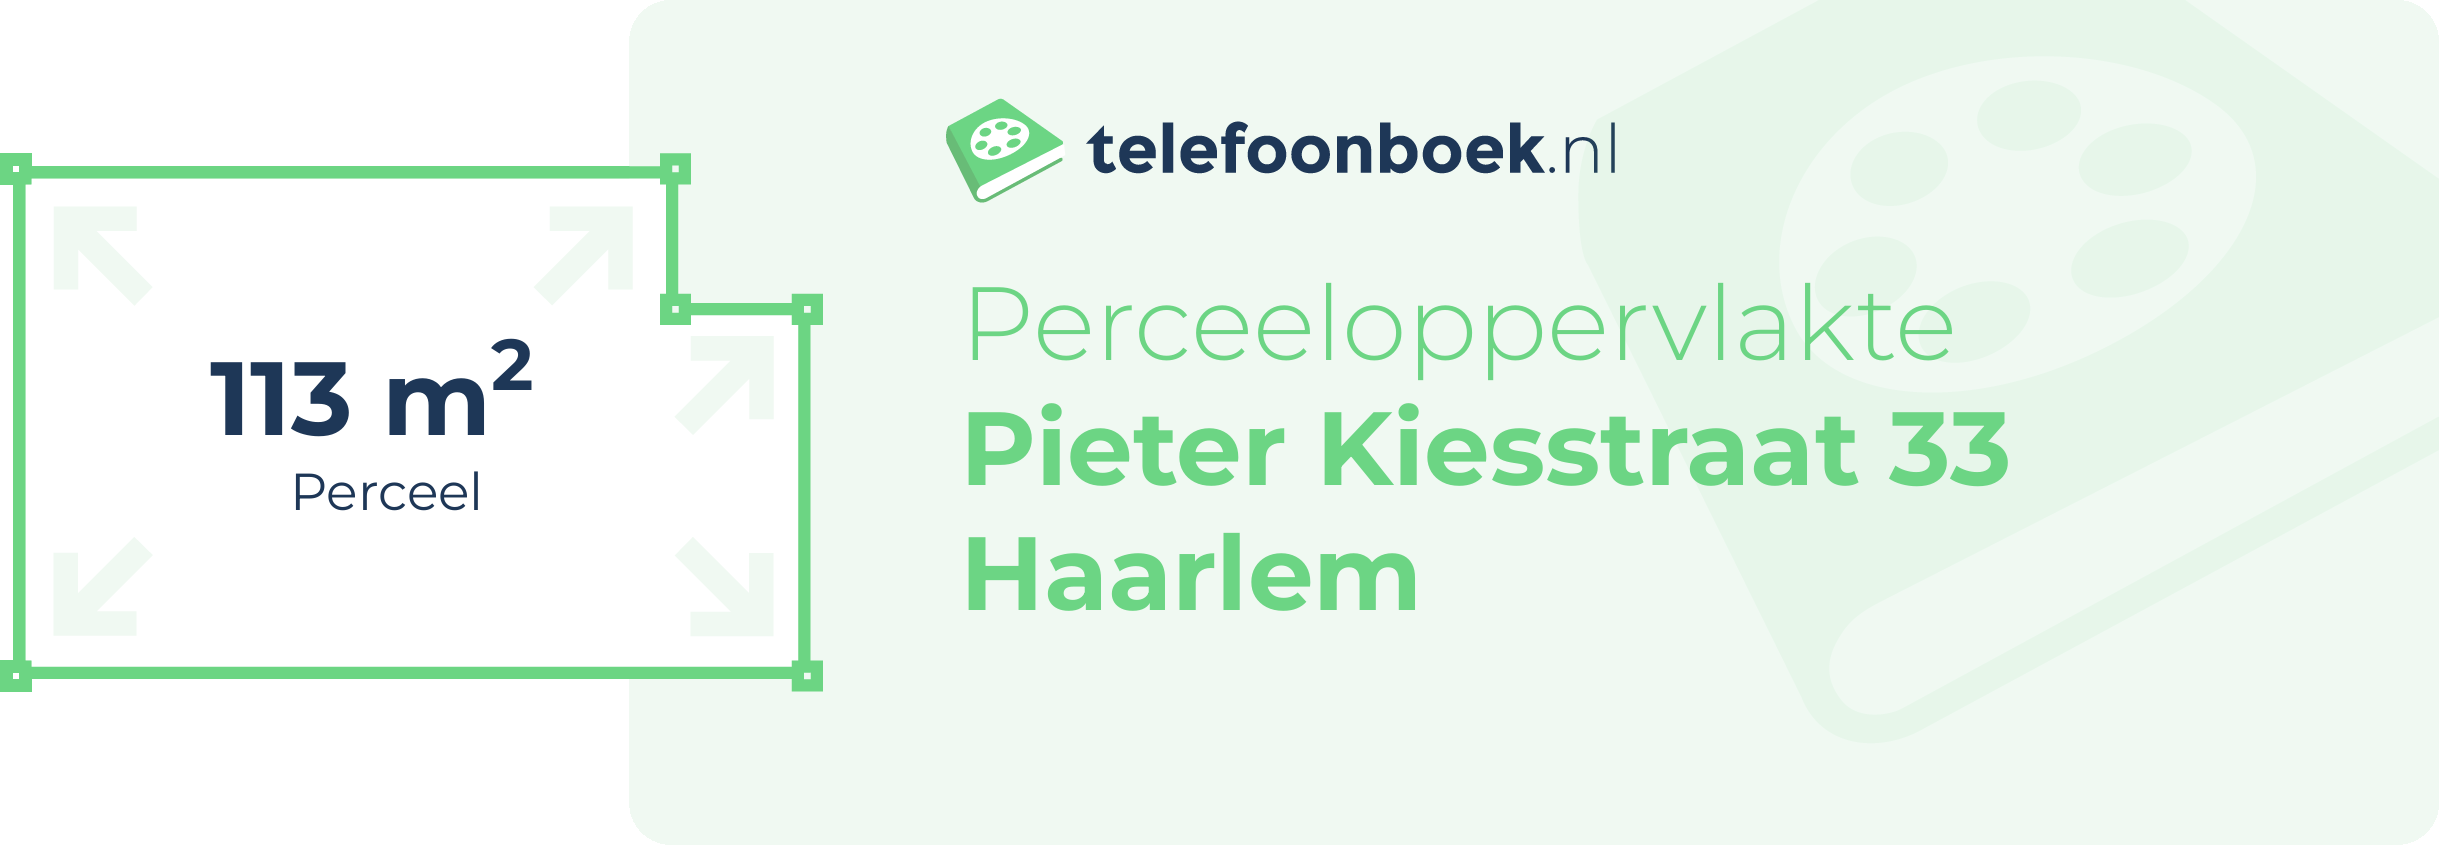 Perceeloppervlakte Pieter Kiesstraat 33 Haarlem